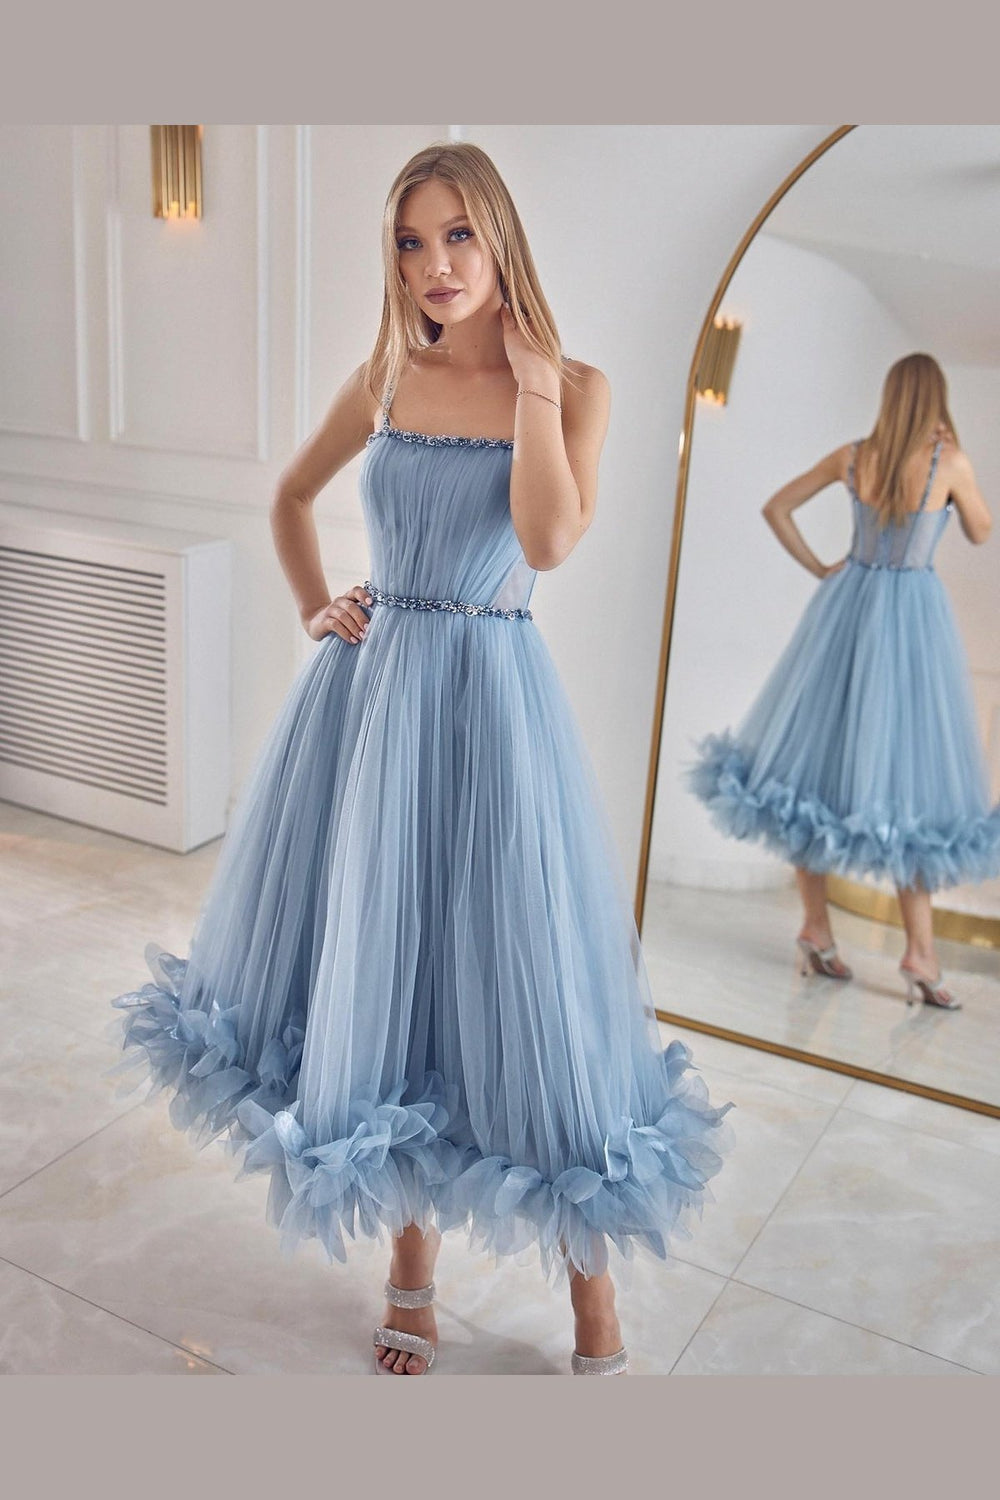 Wide Skirt Blue Engagement Dress